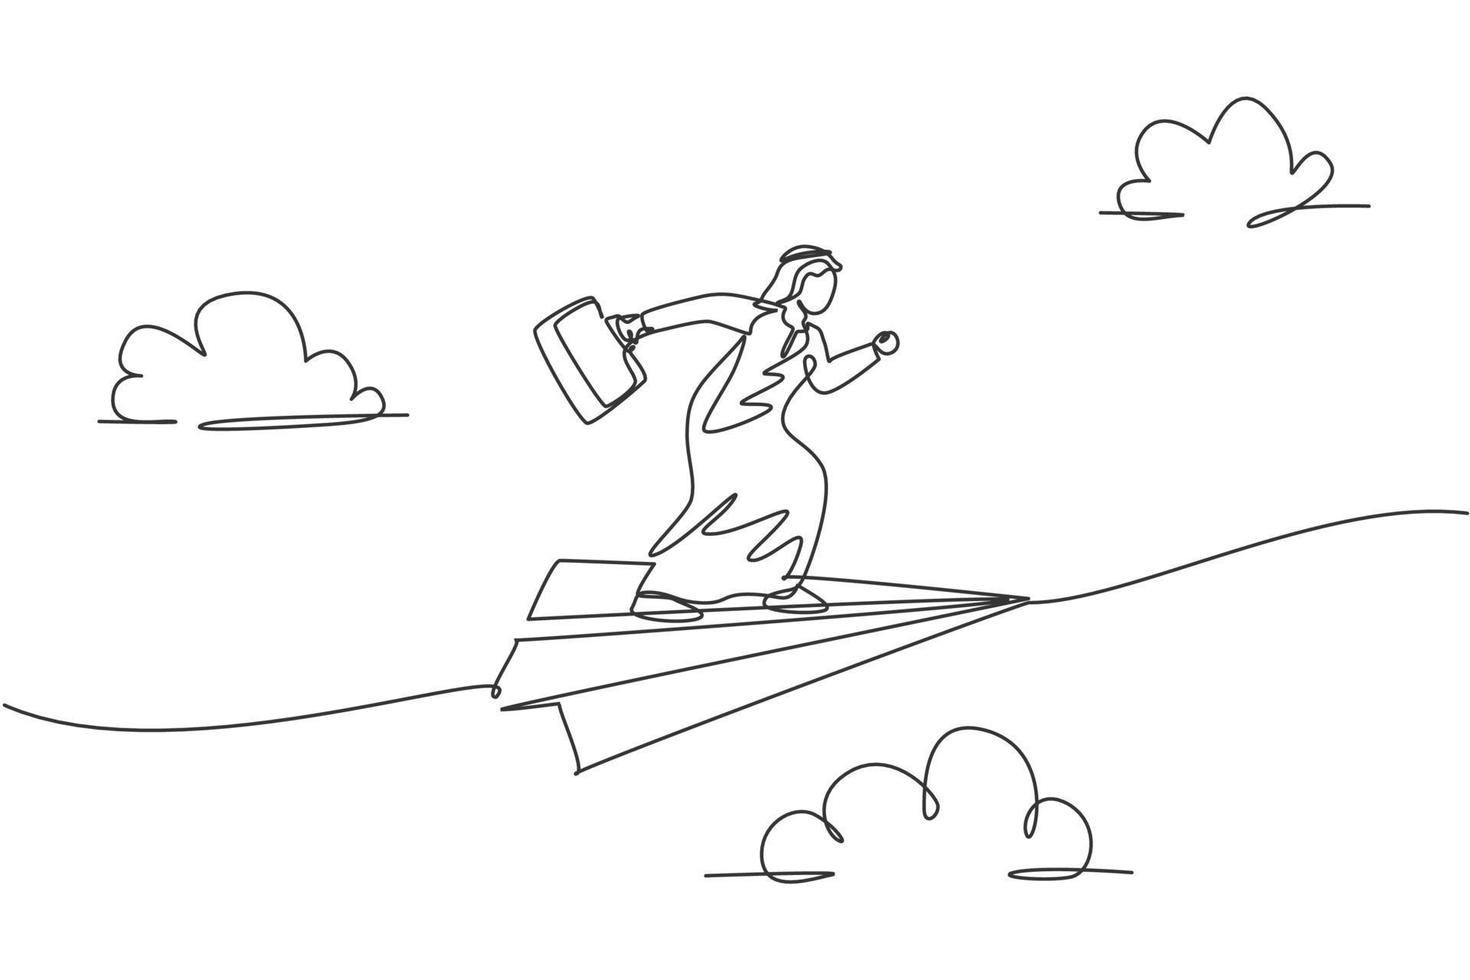 singolo disegno di una linea giovane uomo d'affari arabo che vola su un aereo di carta e posa pronto per l'esecuzione. concetto di metafora minima missione aziendale. illustrazione vettoriale grafica di disegno di disegno di linea continua moderna